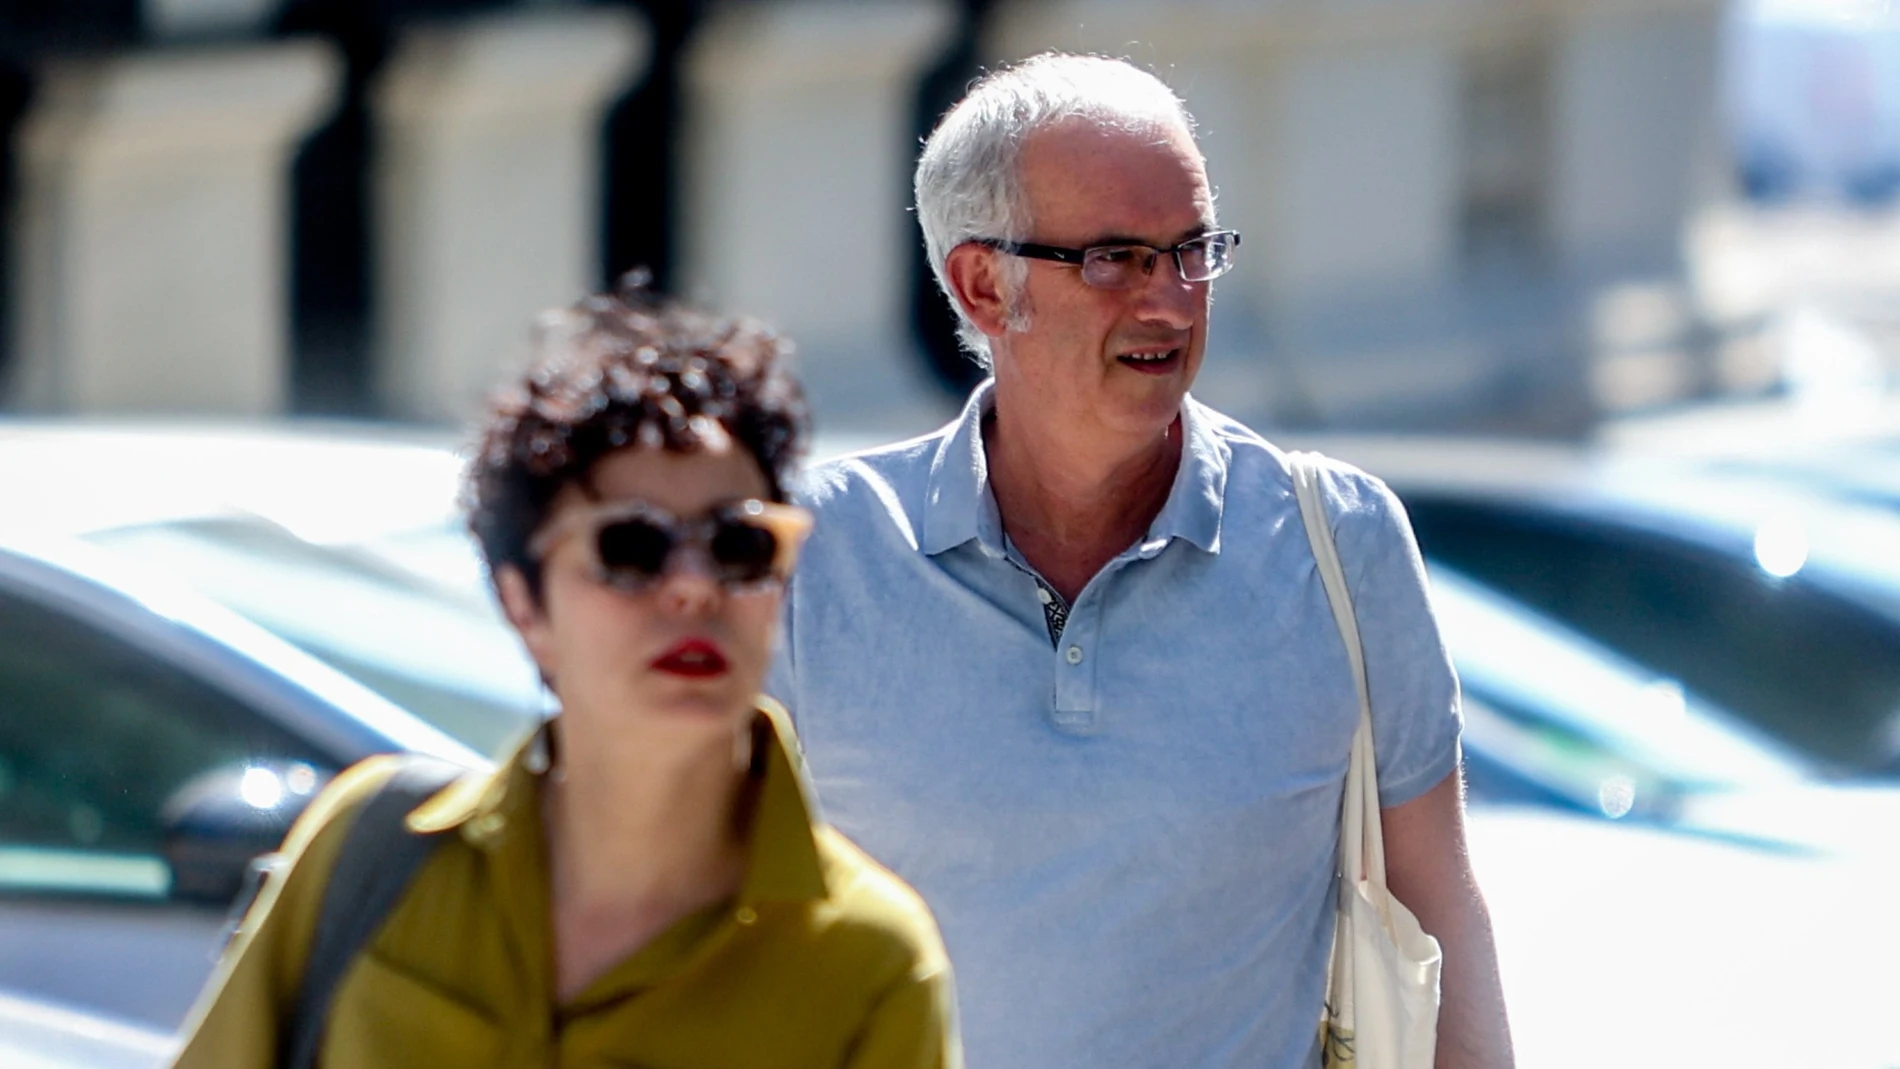 El ex jefe de ETA Miguel Albisu, alias 'Mikel Antza', con gafas, se dirige a la sede de la Audiencia Nacional (AN) de Génova para declarar como imputado por el atentado contra Miguel Ángel Blanco, a 21 de julio de 2022, en Madrid (España)